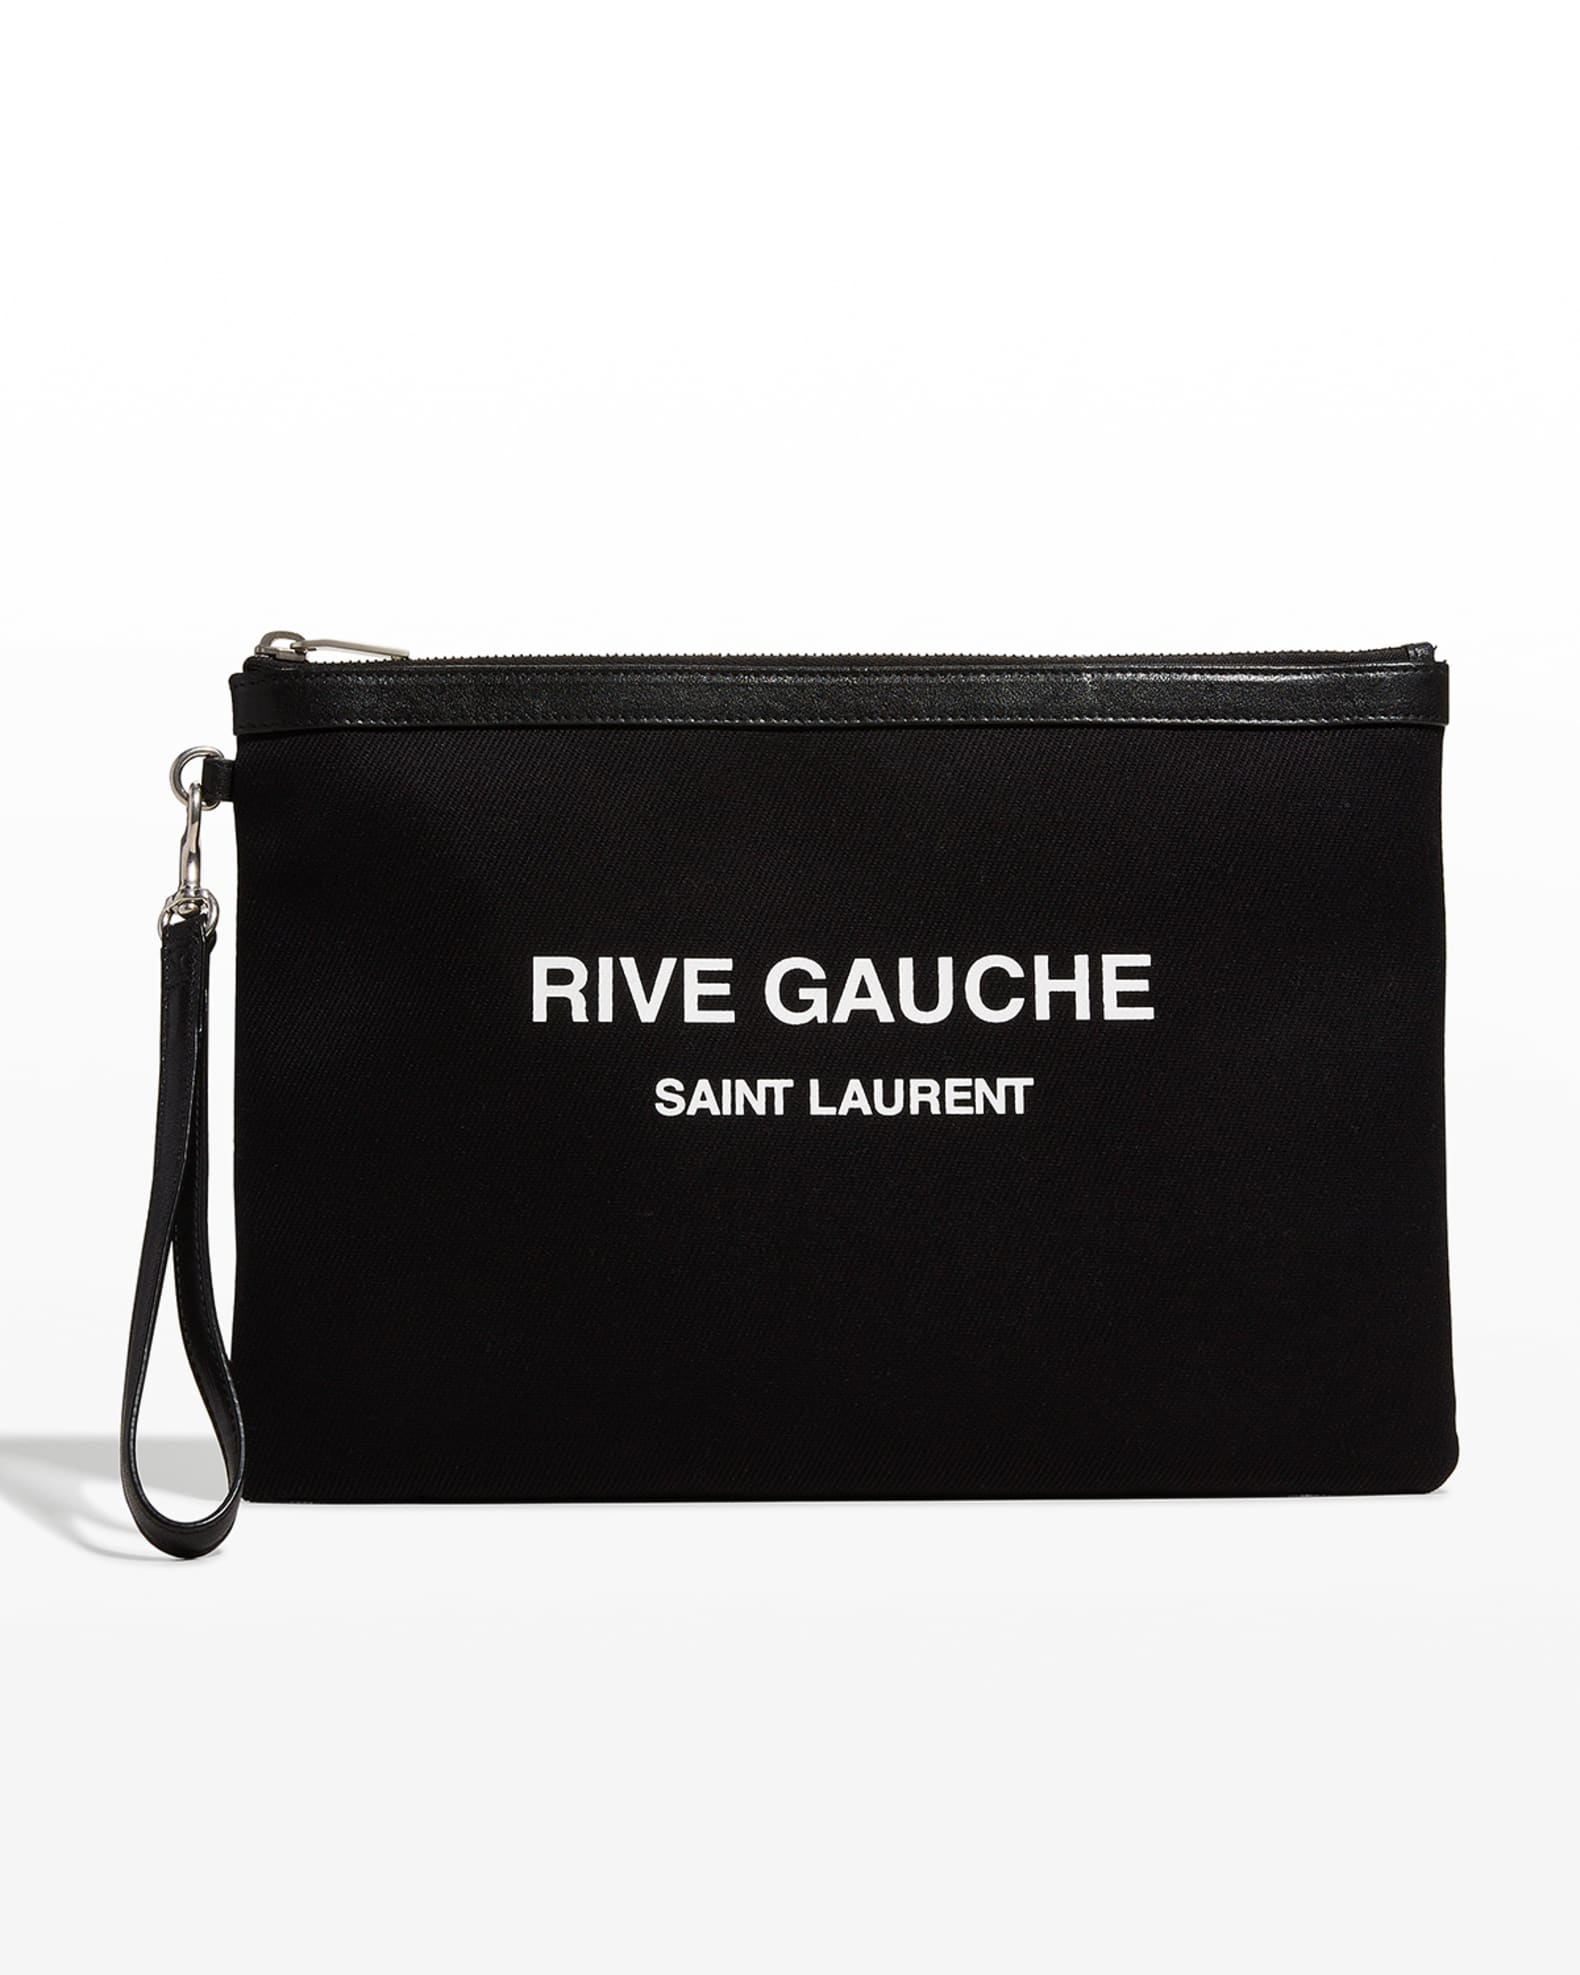 Saint Laurent Rive Gauche Pouch Bag | Neiman Marcus